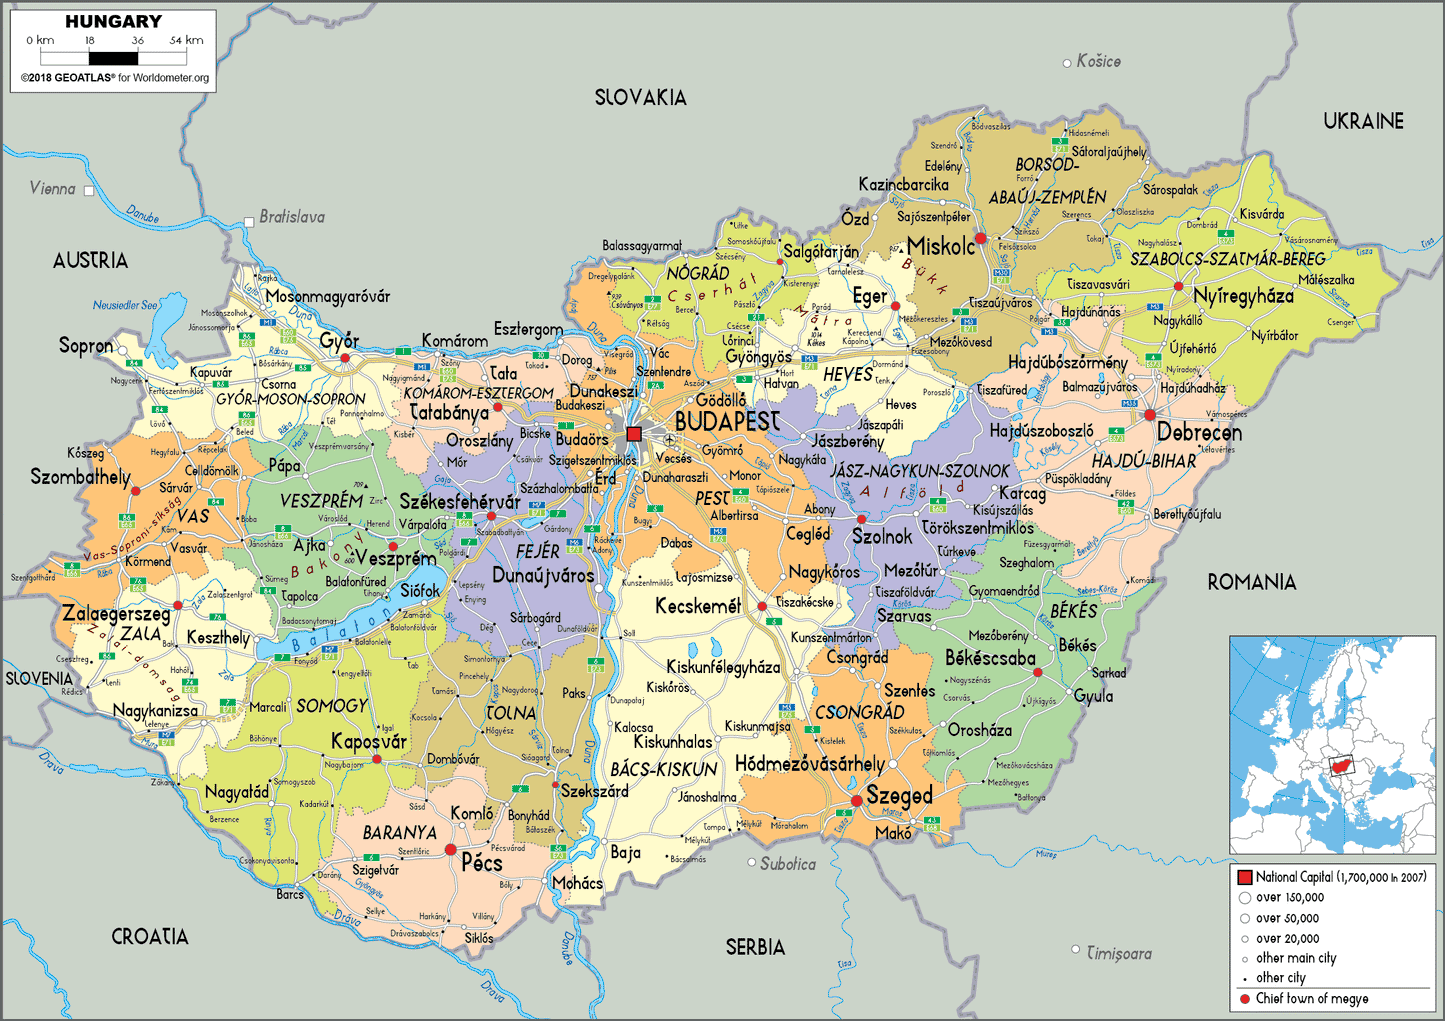 Overzicht regio's in Hongarije